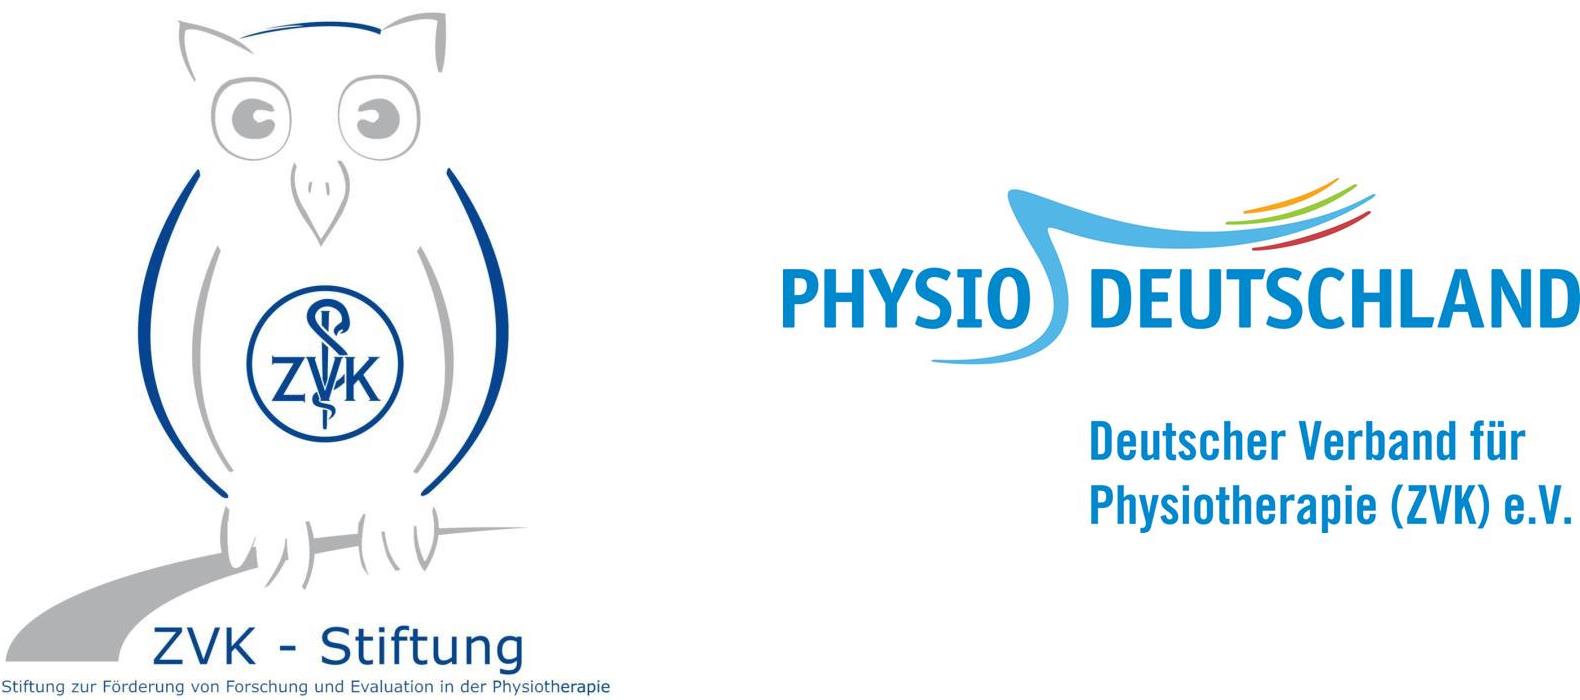 Logos der ZVK-Stiftung zur Förderung von Forschung und Evaluation in der Physiotherapie und des Deutschen Verbands für Physiotherapie (ZVK) e.V.